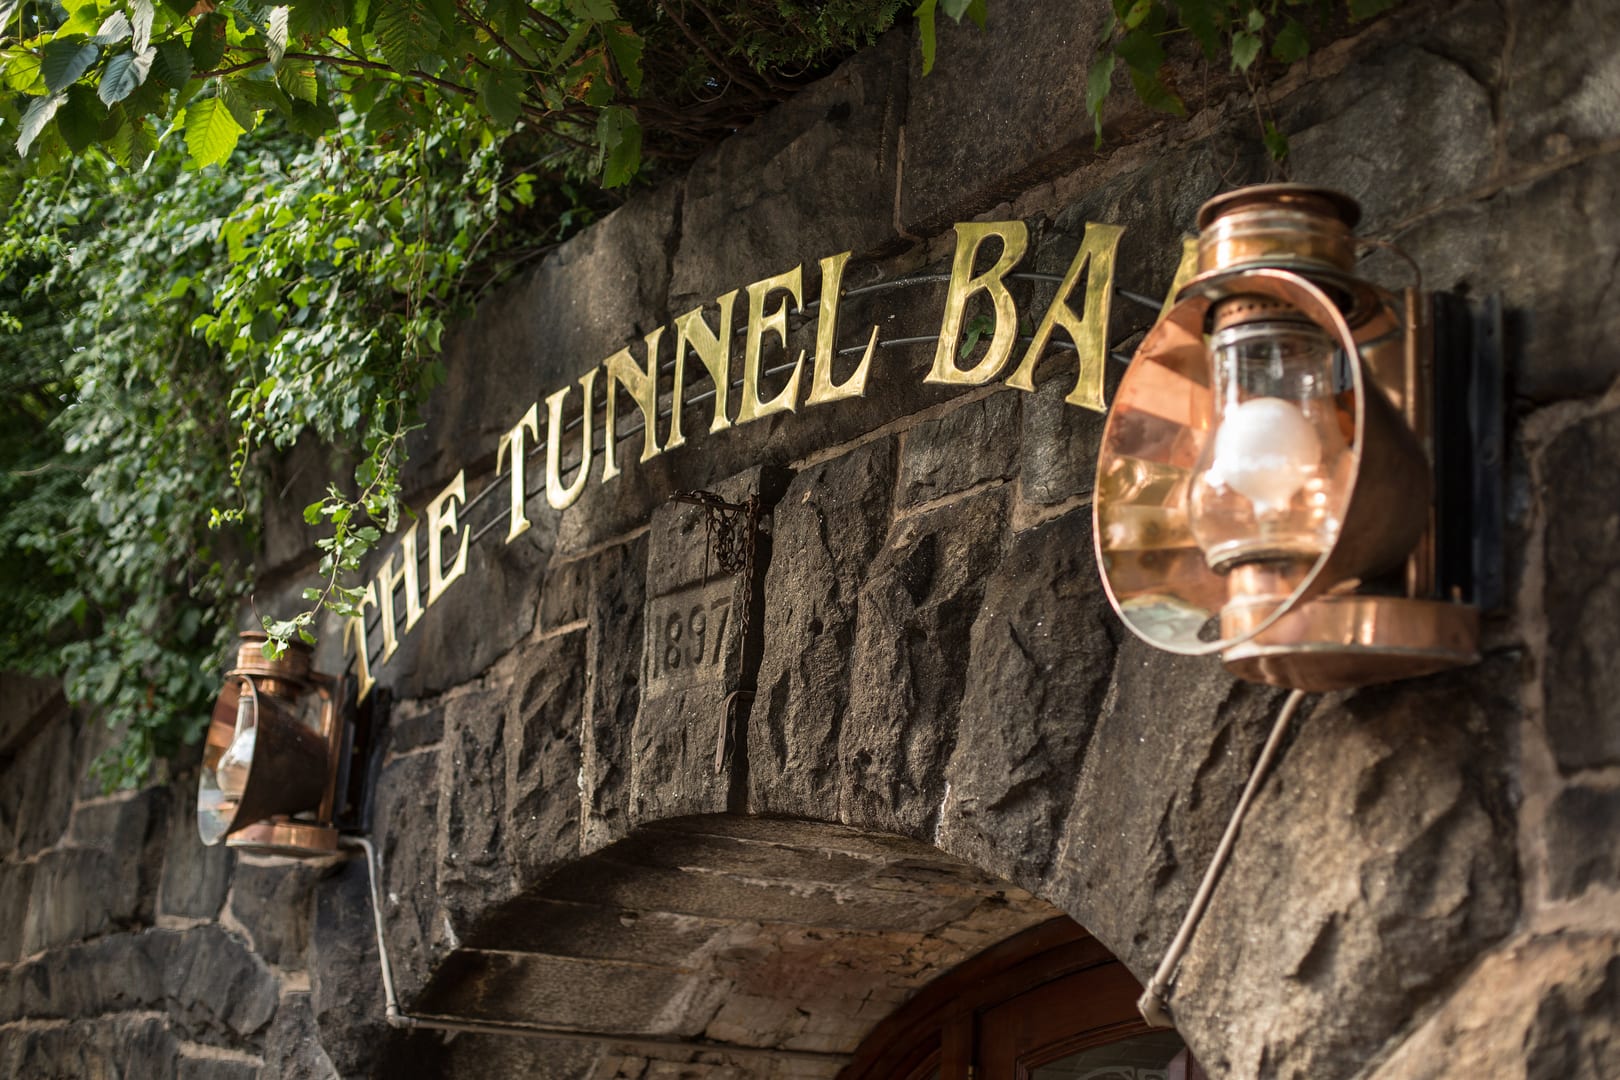 Tunnel Bar